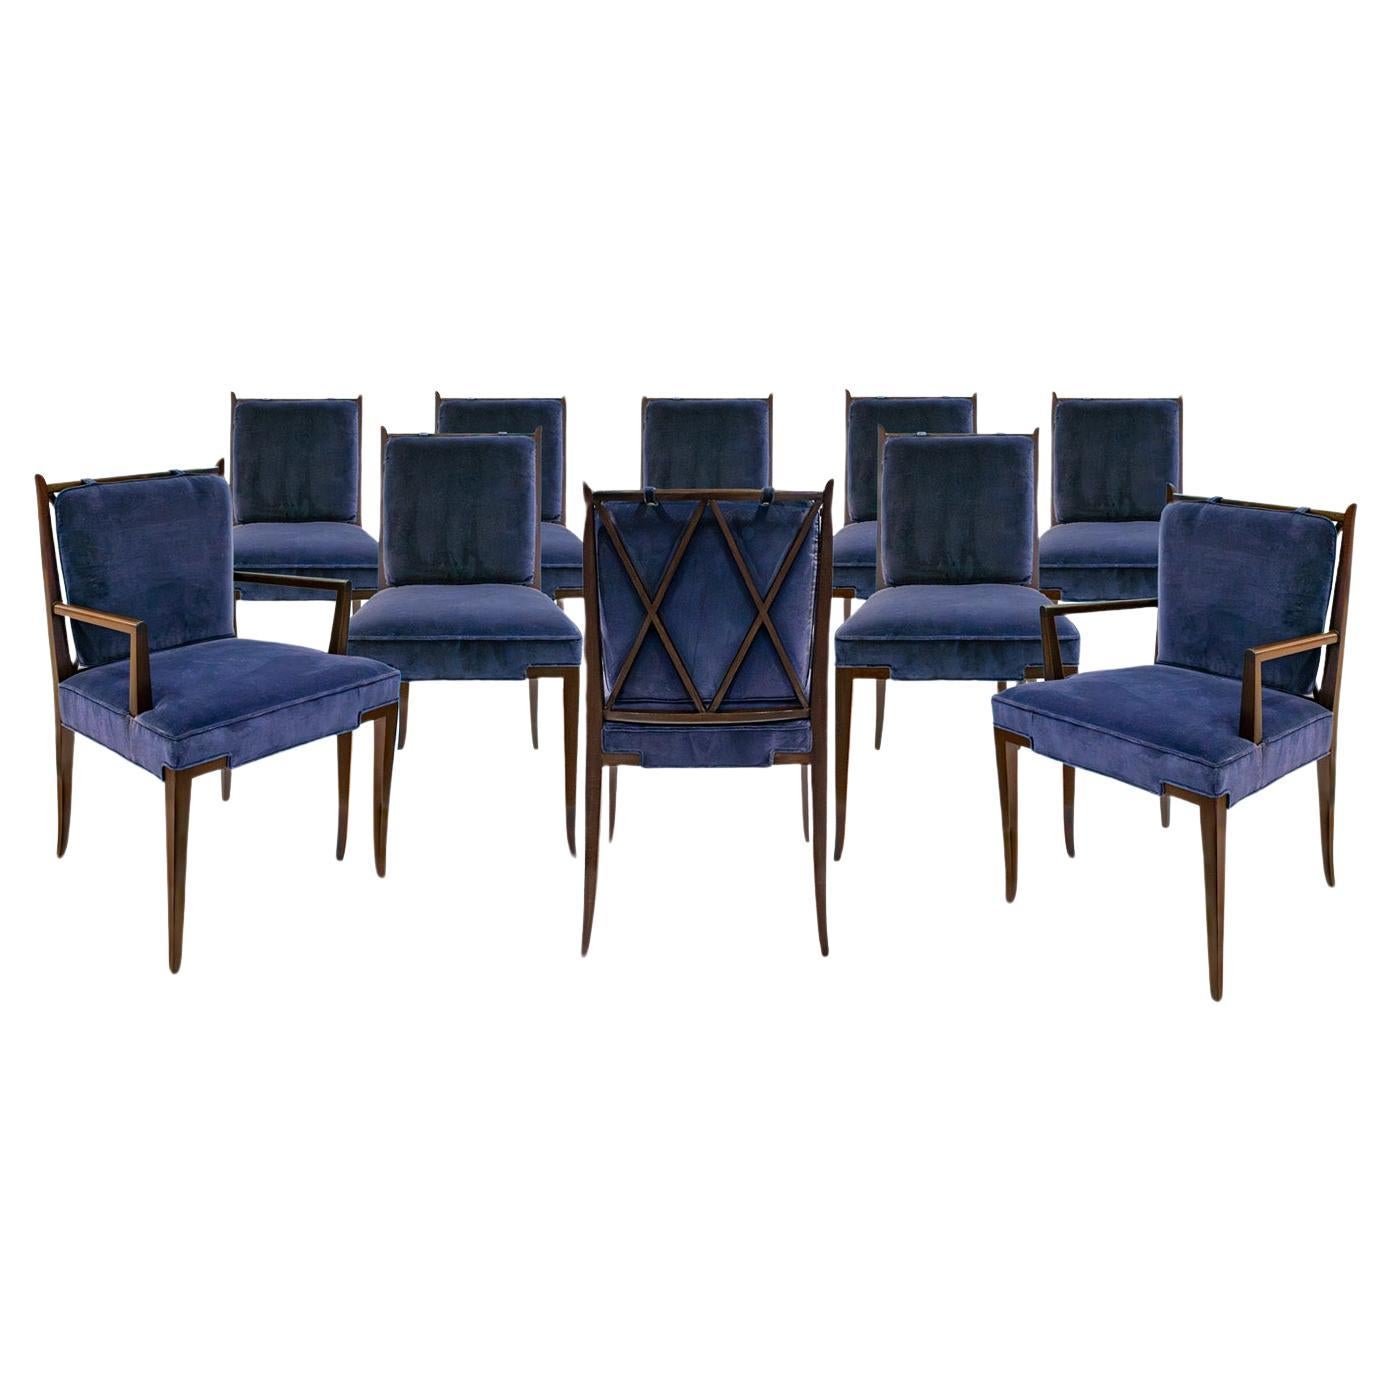 Set aus 10 eleganten Esszimmerstühlen von Tommi Parzinger mit dekorativer Rückenlehne, 1950er Jahre